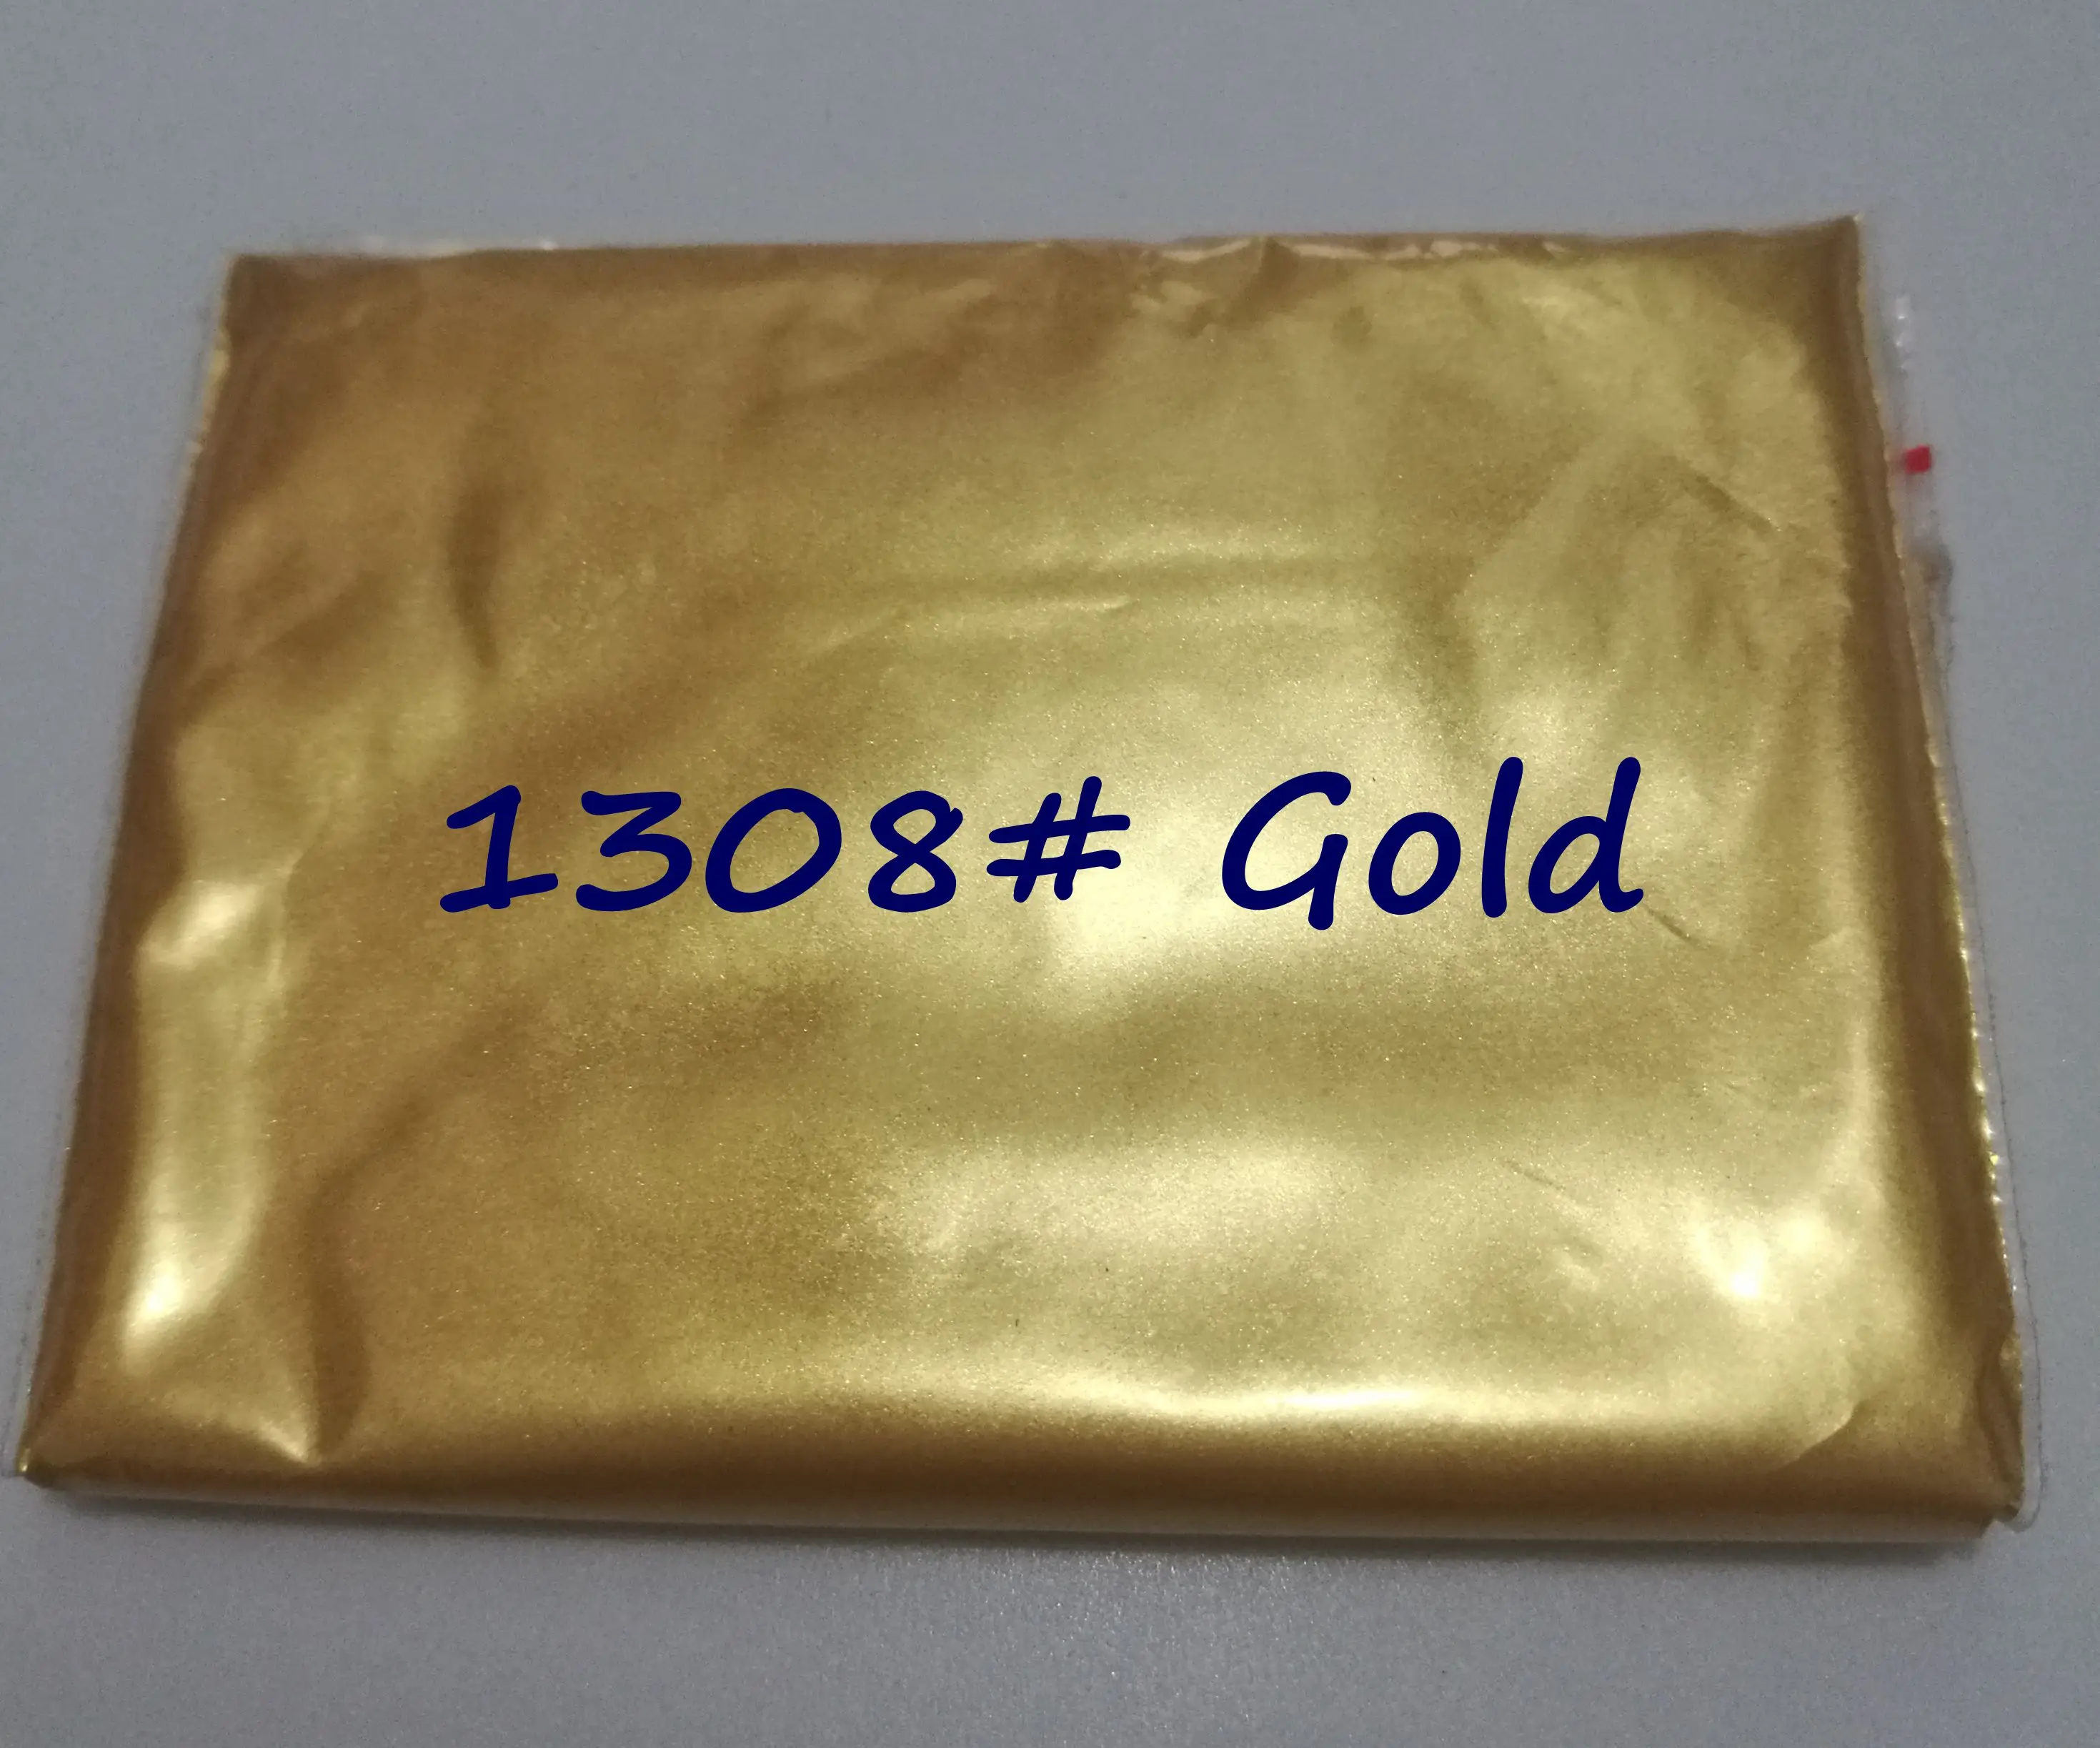 500 г 302 Золотой жемчужный порошок Позолоченные автомобильные тени для век серьги ювелирные украшения слюда косметические красители покрытия - Цвет: 1308 Gold